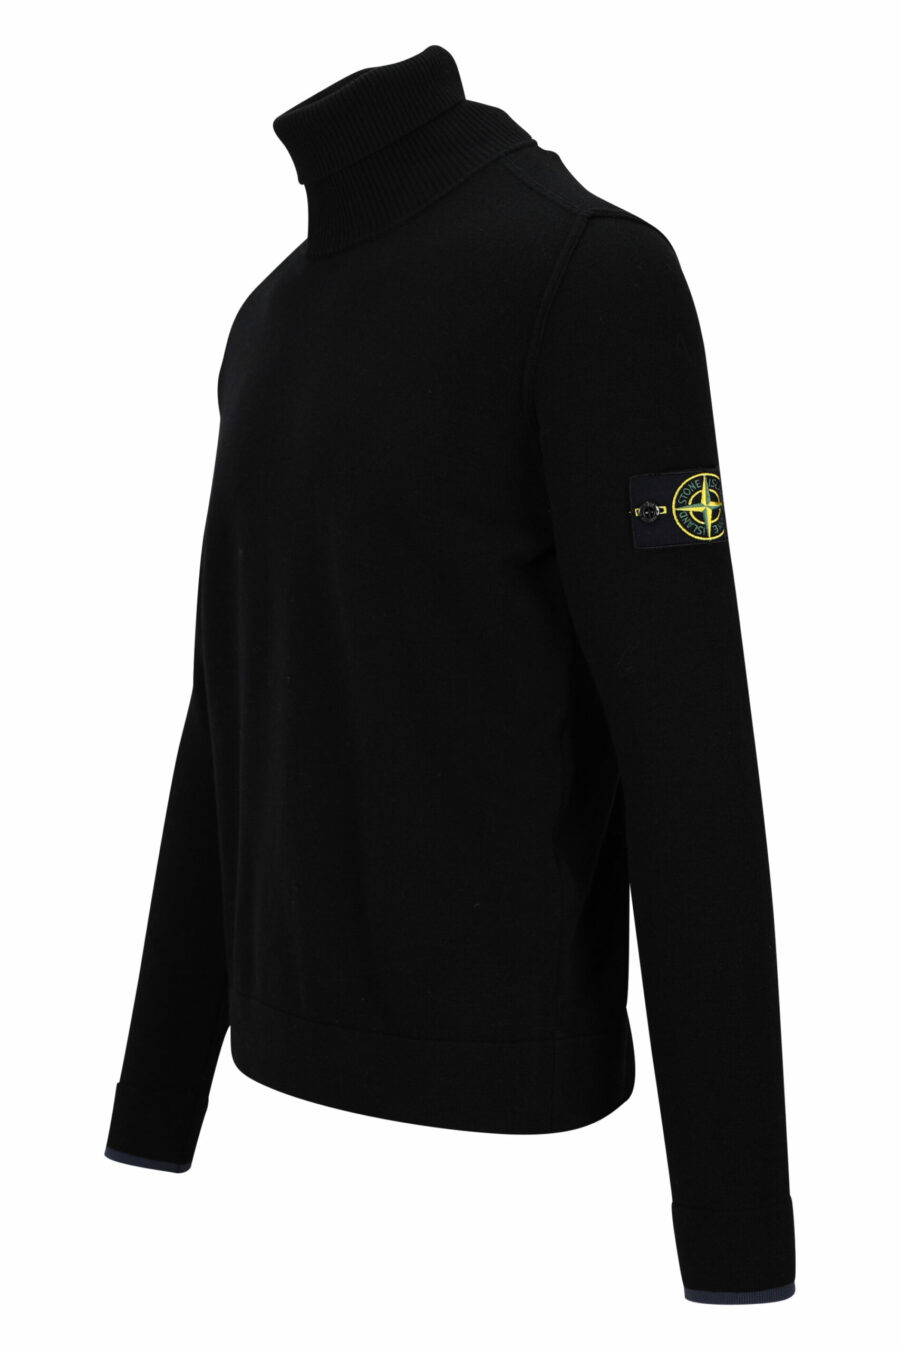 Sweatshirt preta com gola alta e emblema com logótipo lateral - 8052572741814 1 scaled